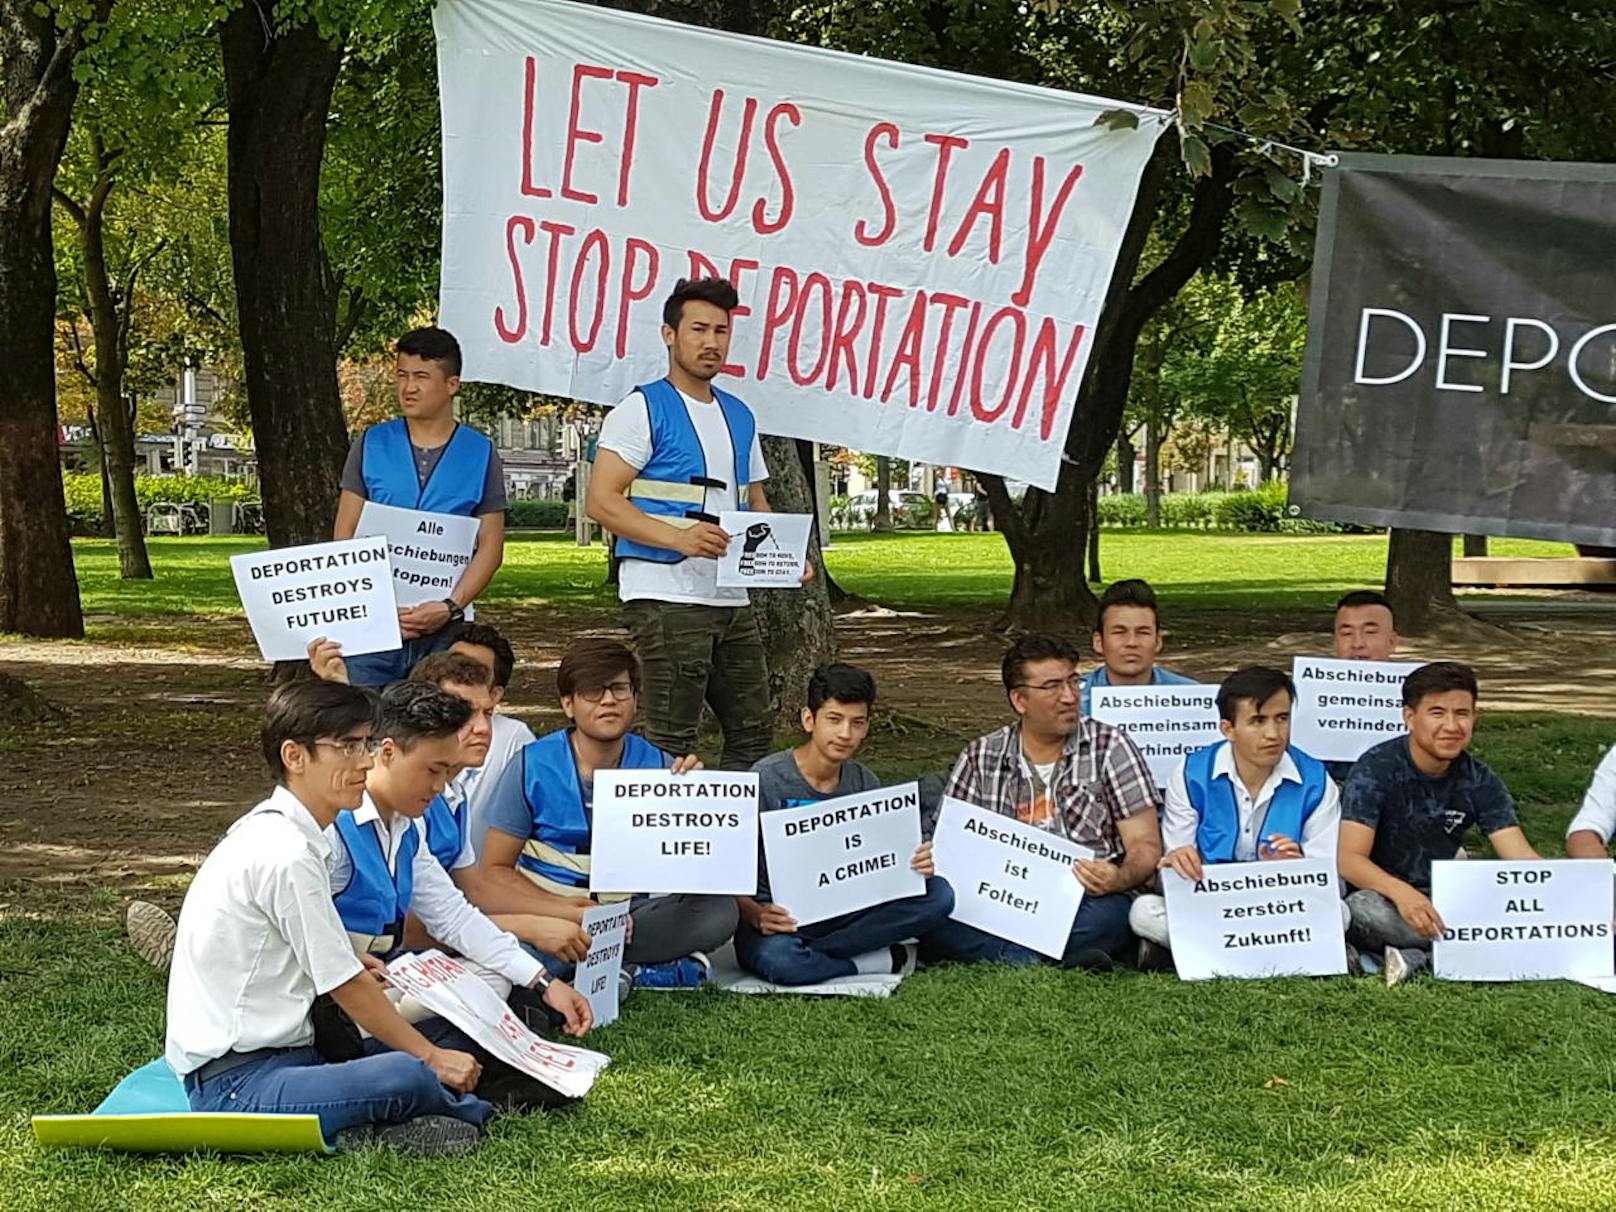 Afghanische Asylwerber und Unterstützer demonstrieren im Wiener Votivpark gegen Abschiebungen nach Afghanistan.